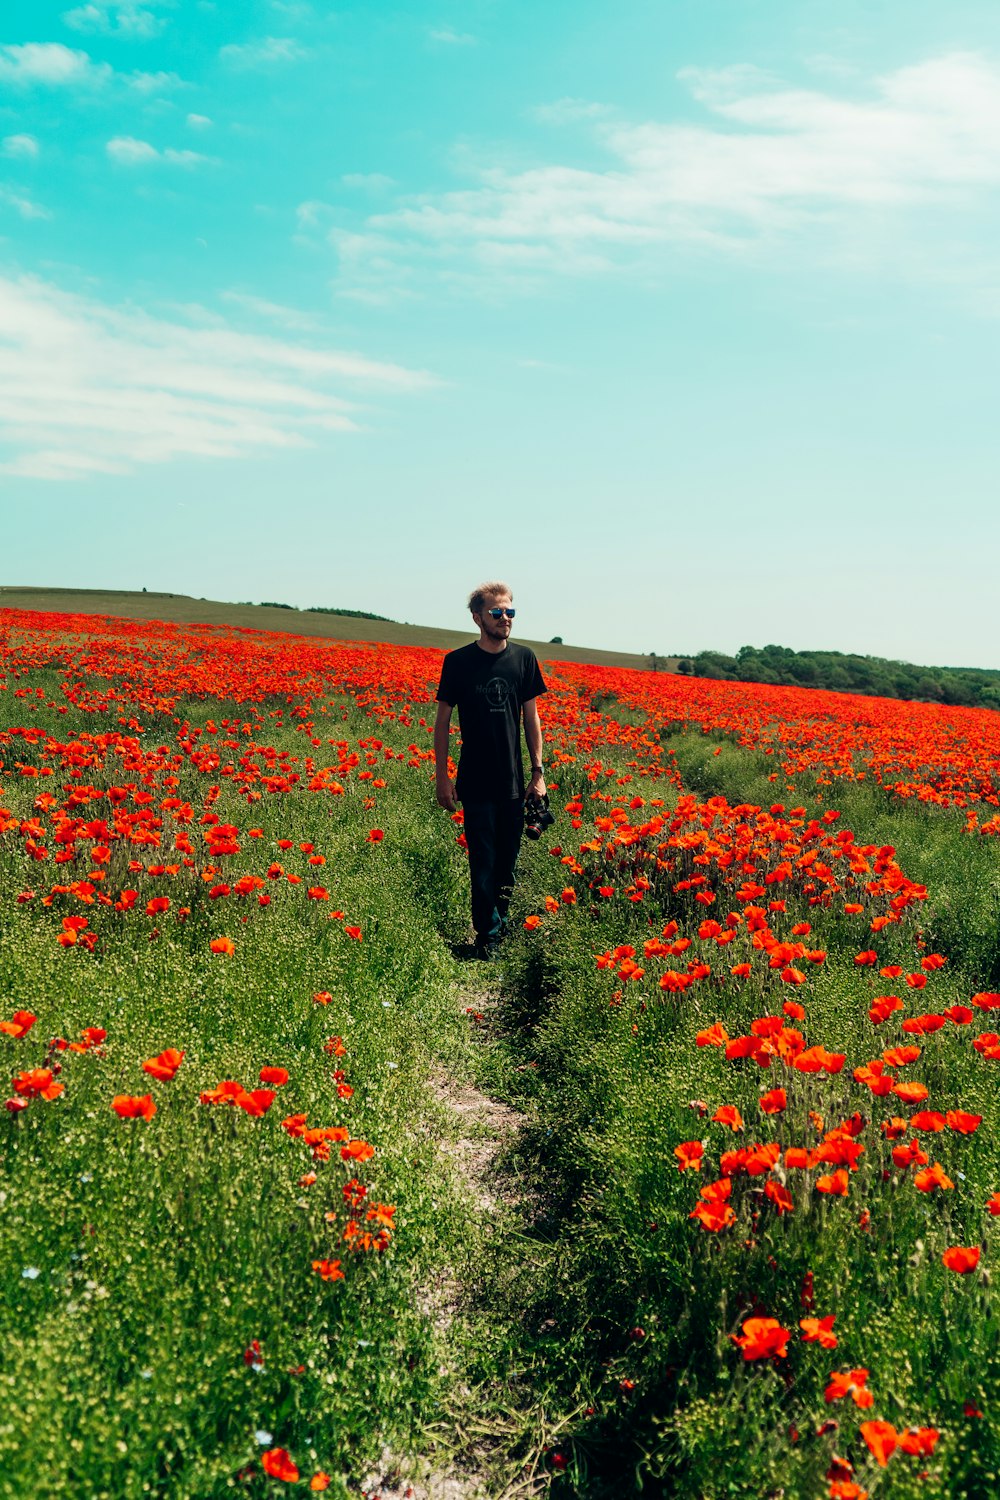 Mann in schwarzer Jacke tagsüber auf rotem Blumenfeld